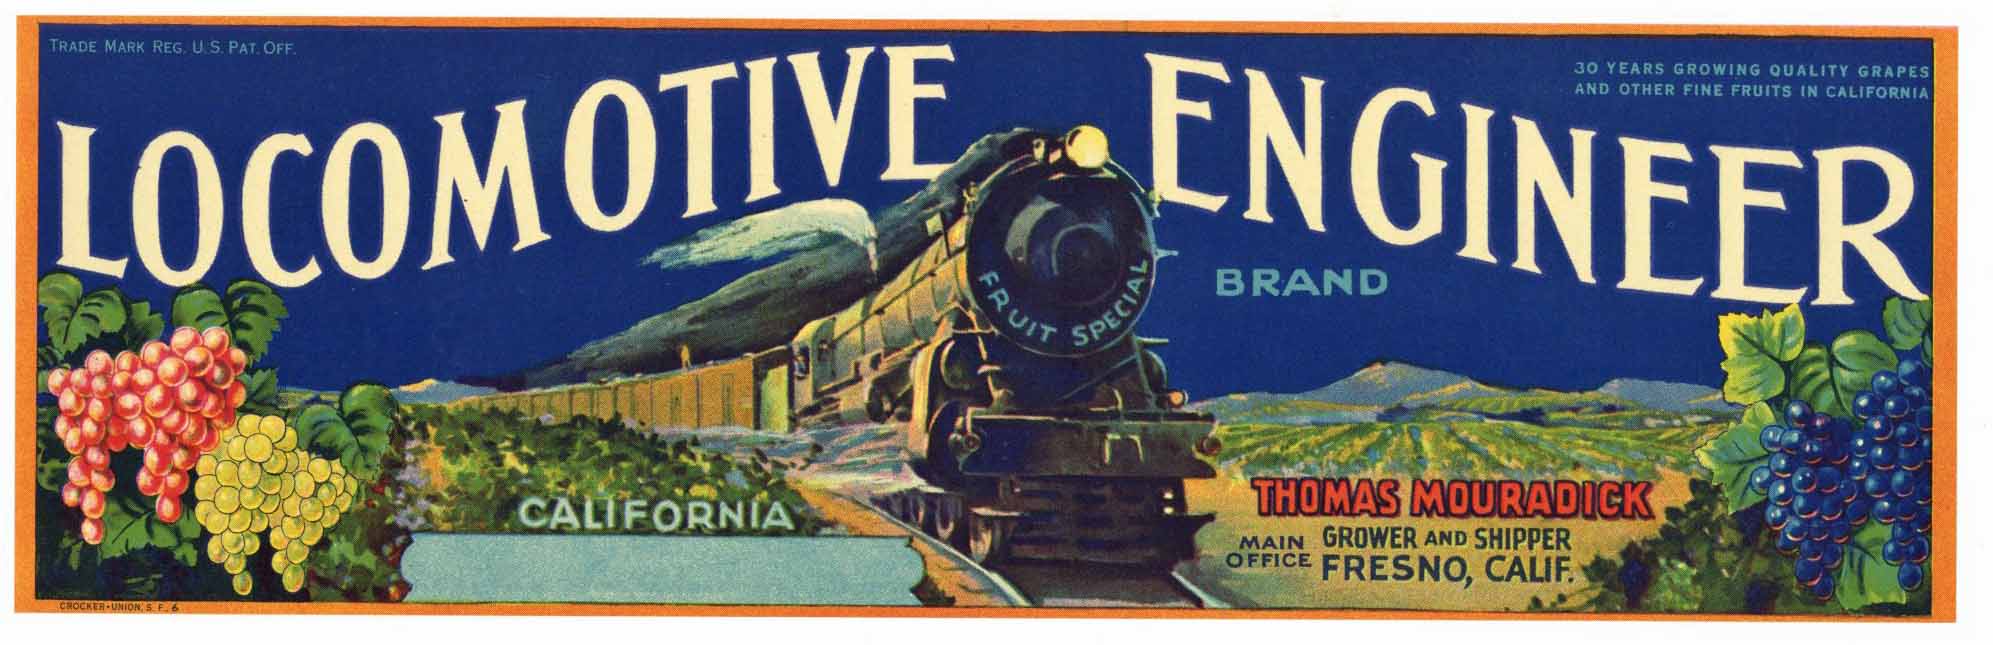 Locomotive Engineer Brand Vintage Fresno Grape Crate Label, older